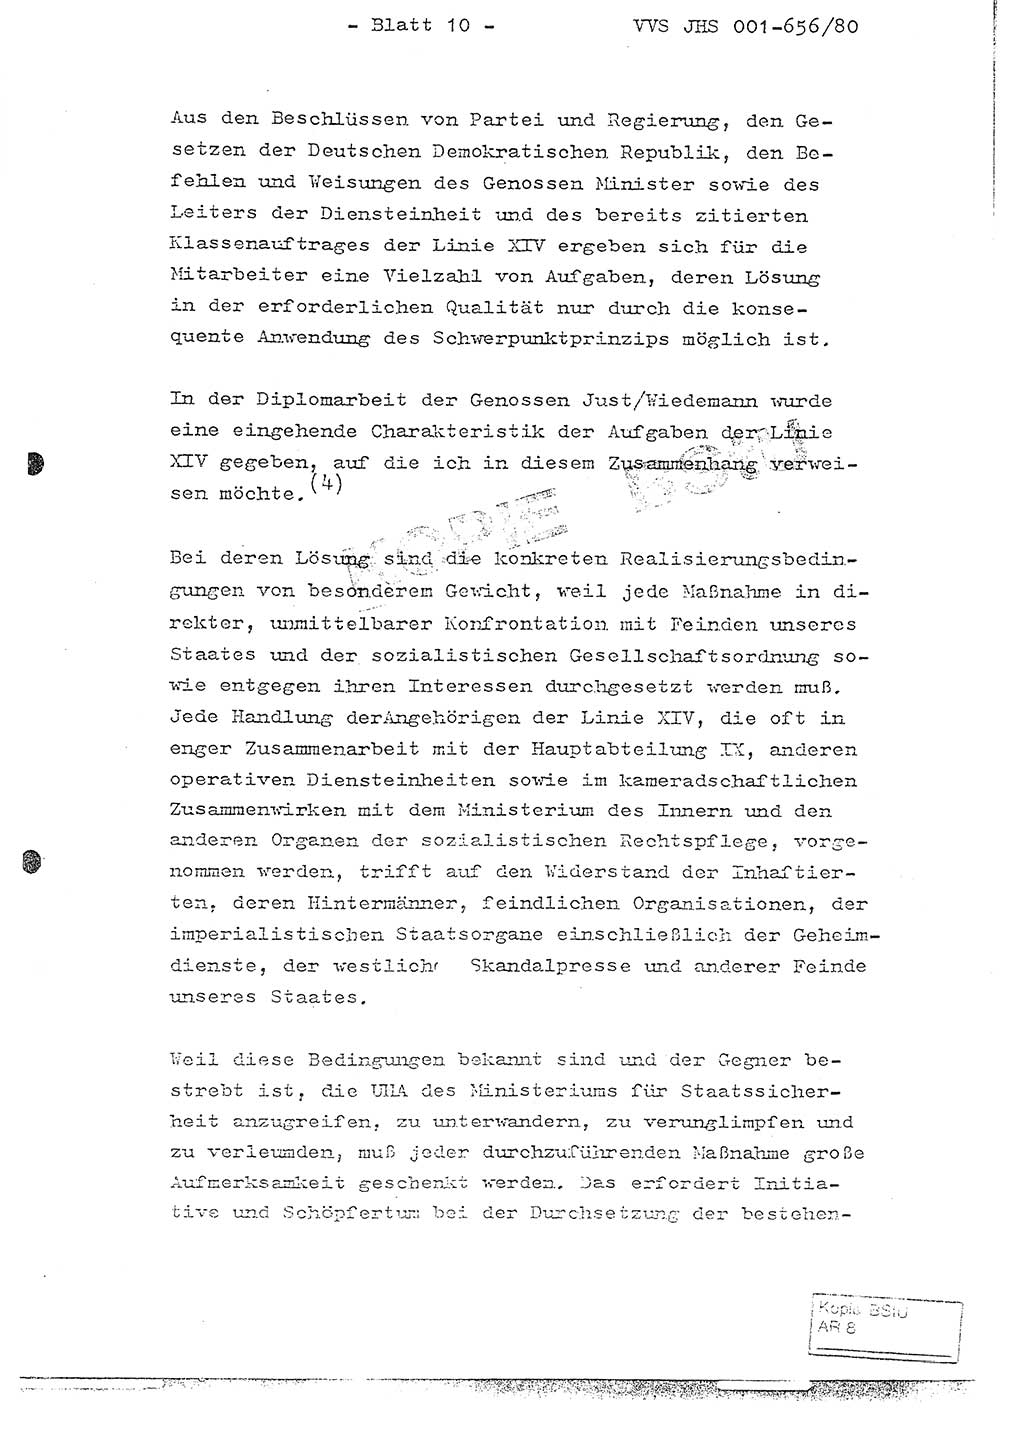 Fachschulabschlußarbeit Unterleutnant Christian Kätzel (Abt. ⅩⅣ), Ministerium für Staatssicherheit (MfS) [Deutsche Demokratische Republik (DDR)], Juristische Hochschule (JHS), Vertrauliche Verschlußsache (VVS) 001-656/80, Potsdam 1980, Blatt 10 (FS-Abschl.-Arb. MfS DDR JHS VVS 001-656/80 1980, Bl. 10)